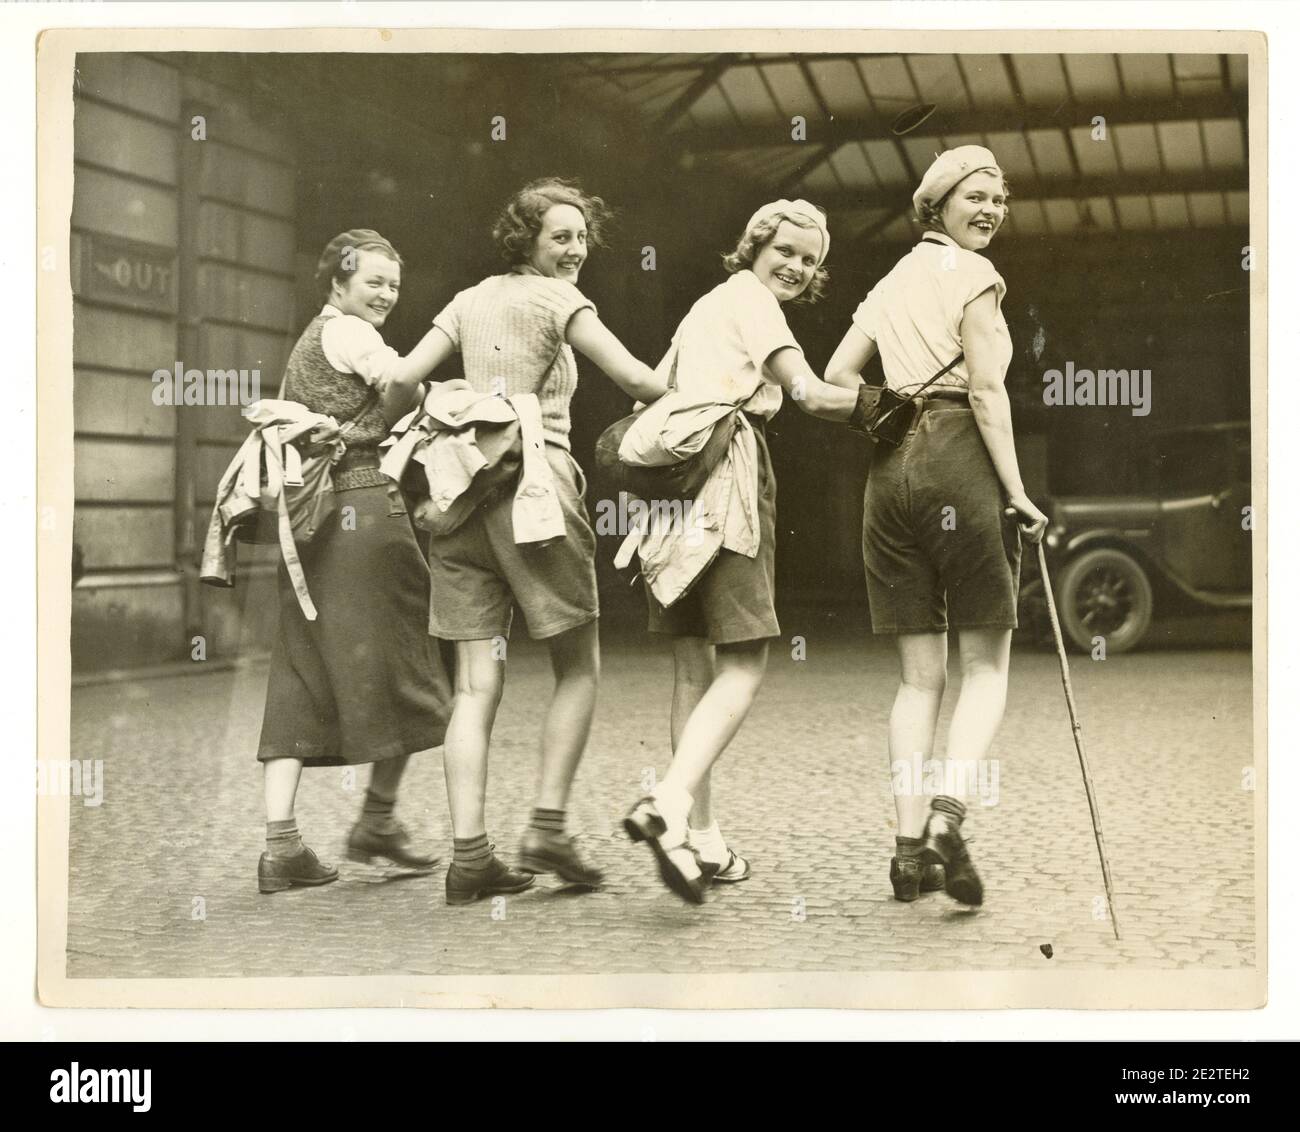 Foto stampa dell'era WW2 di felici giovani escursionisti alla stazione ferroviaria, Londra, Regno Unito, anni '40 Foto Stock